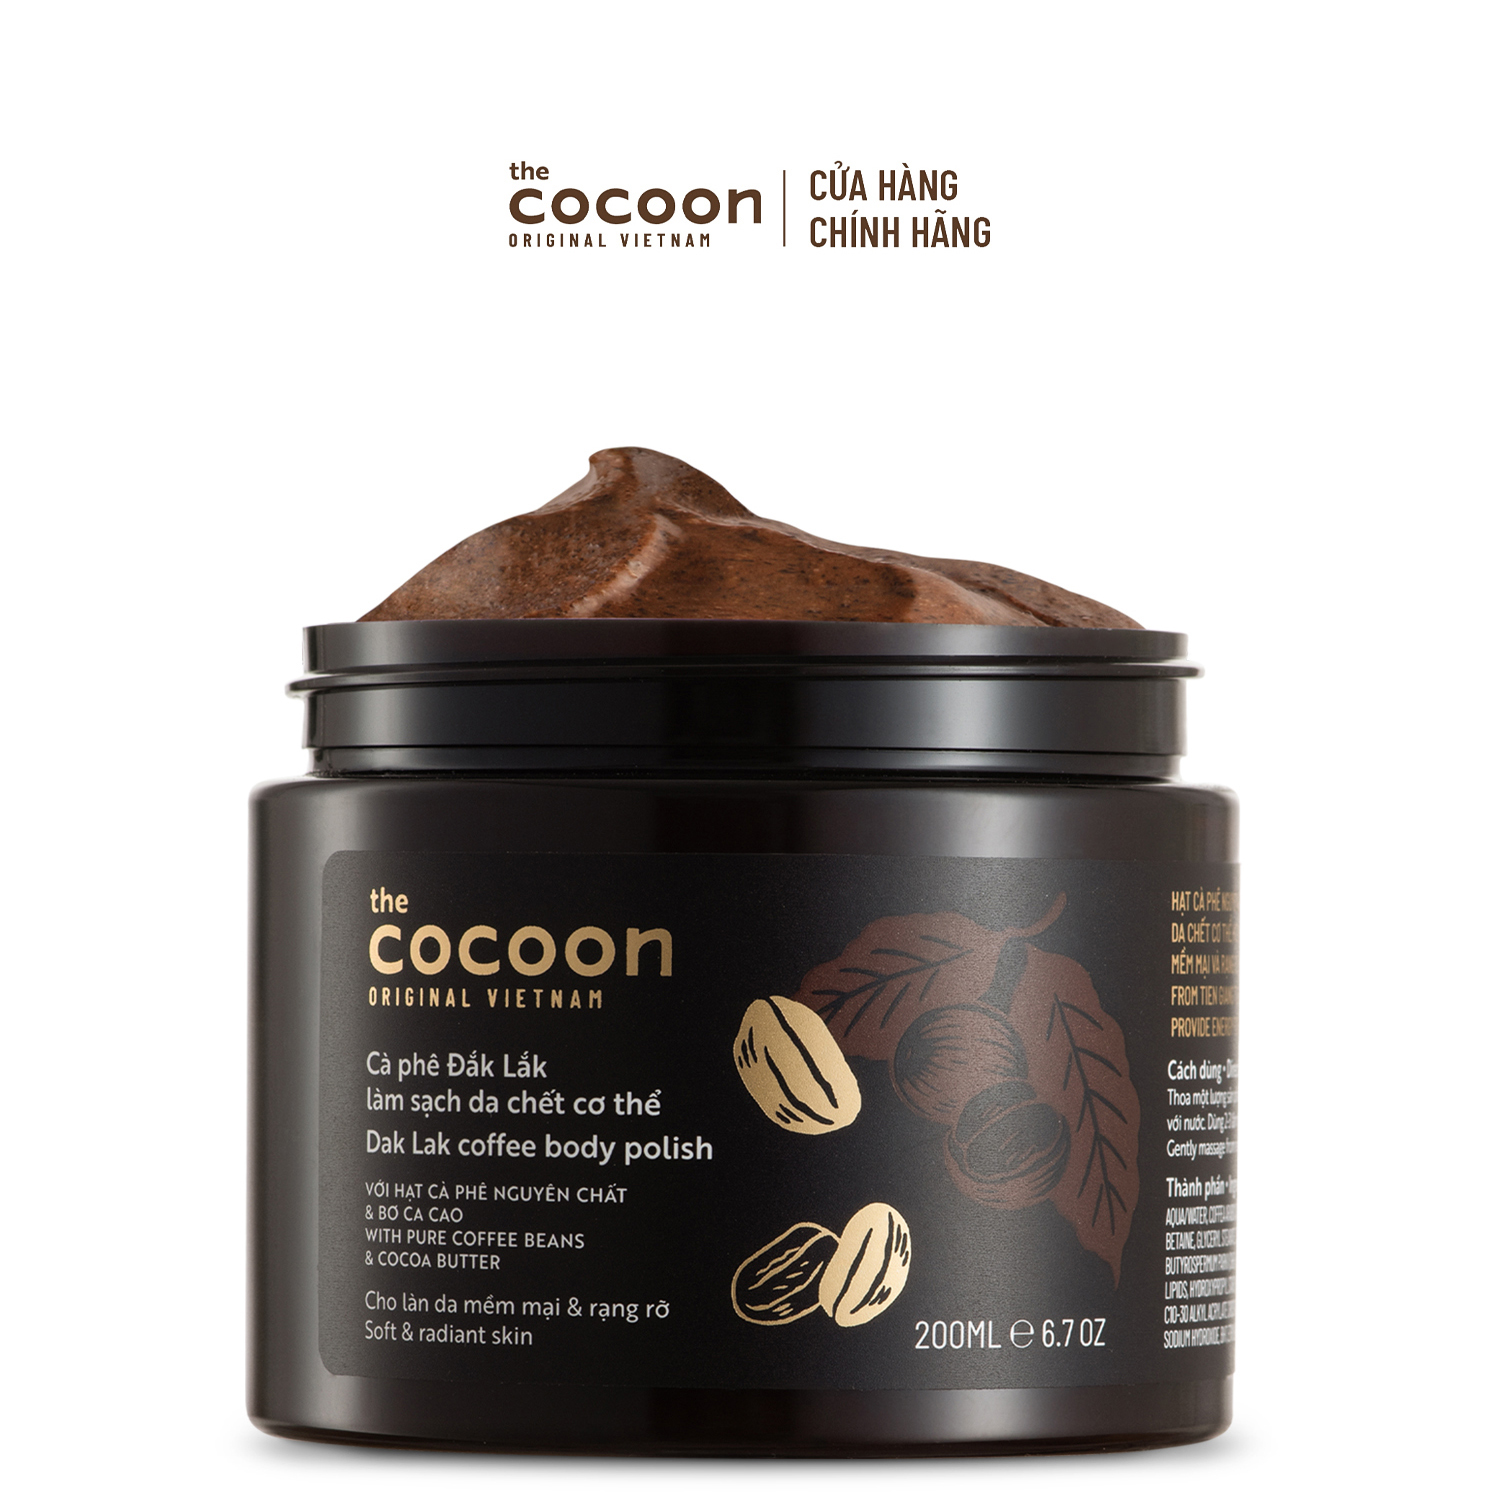 Tẩy da chết cơ thể cà phê Đắk Lắk Cocoon cho làn da mềm mại và rạng rỡ